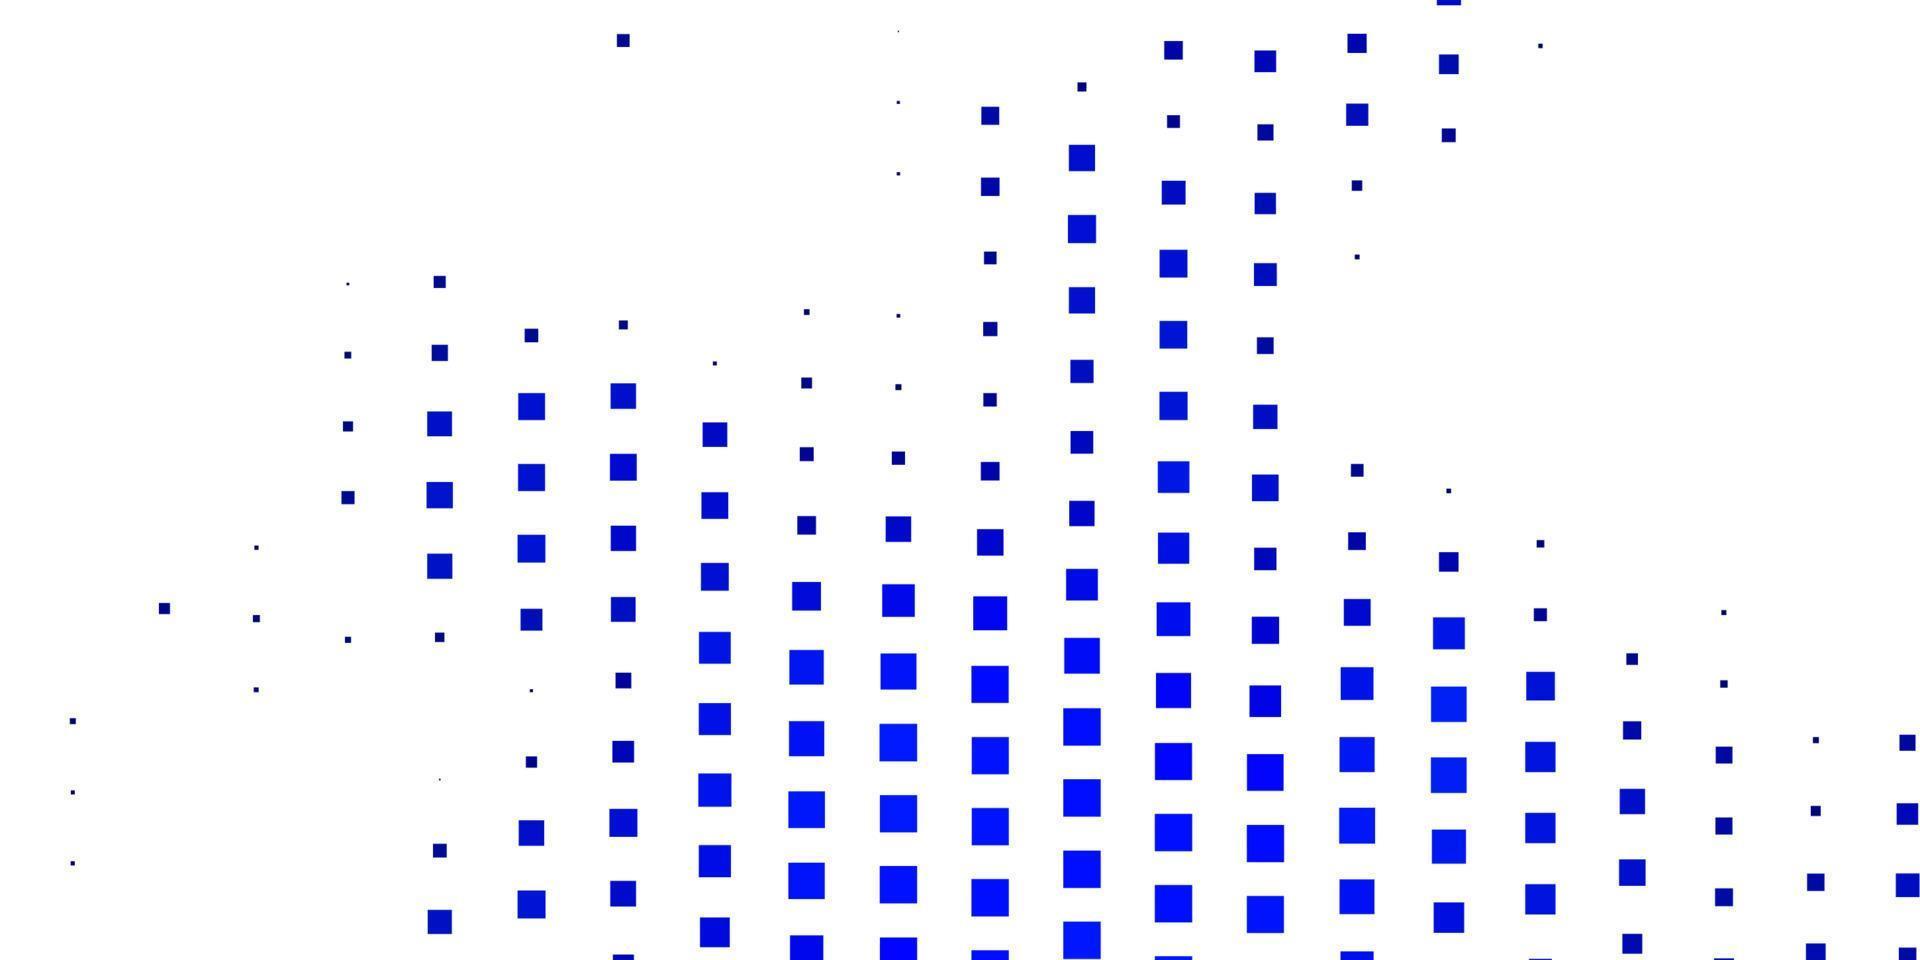 diseño de vector azul oscuro con líneas, rectángulos.